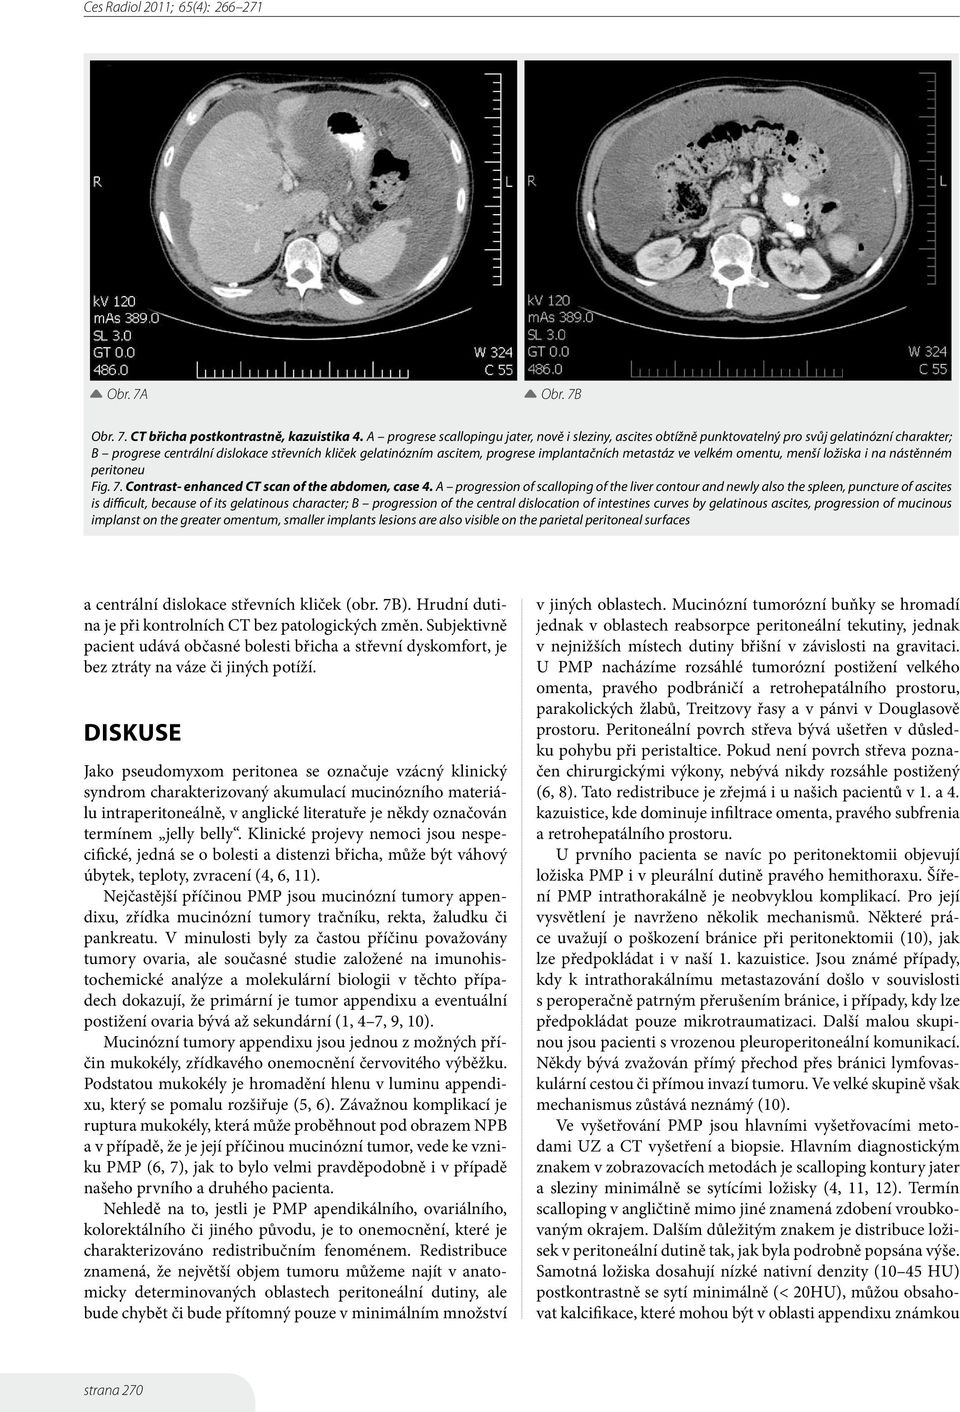 implantačních metastáz ve velkém omentu, menší ložiska i na nástěnném peritoneu Fig. 7. Contrast- enhanced CT scan of the abdomen, case 4.